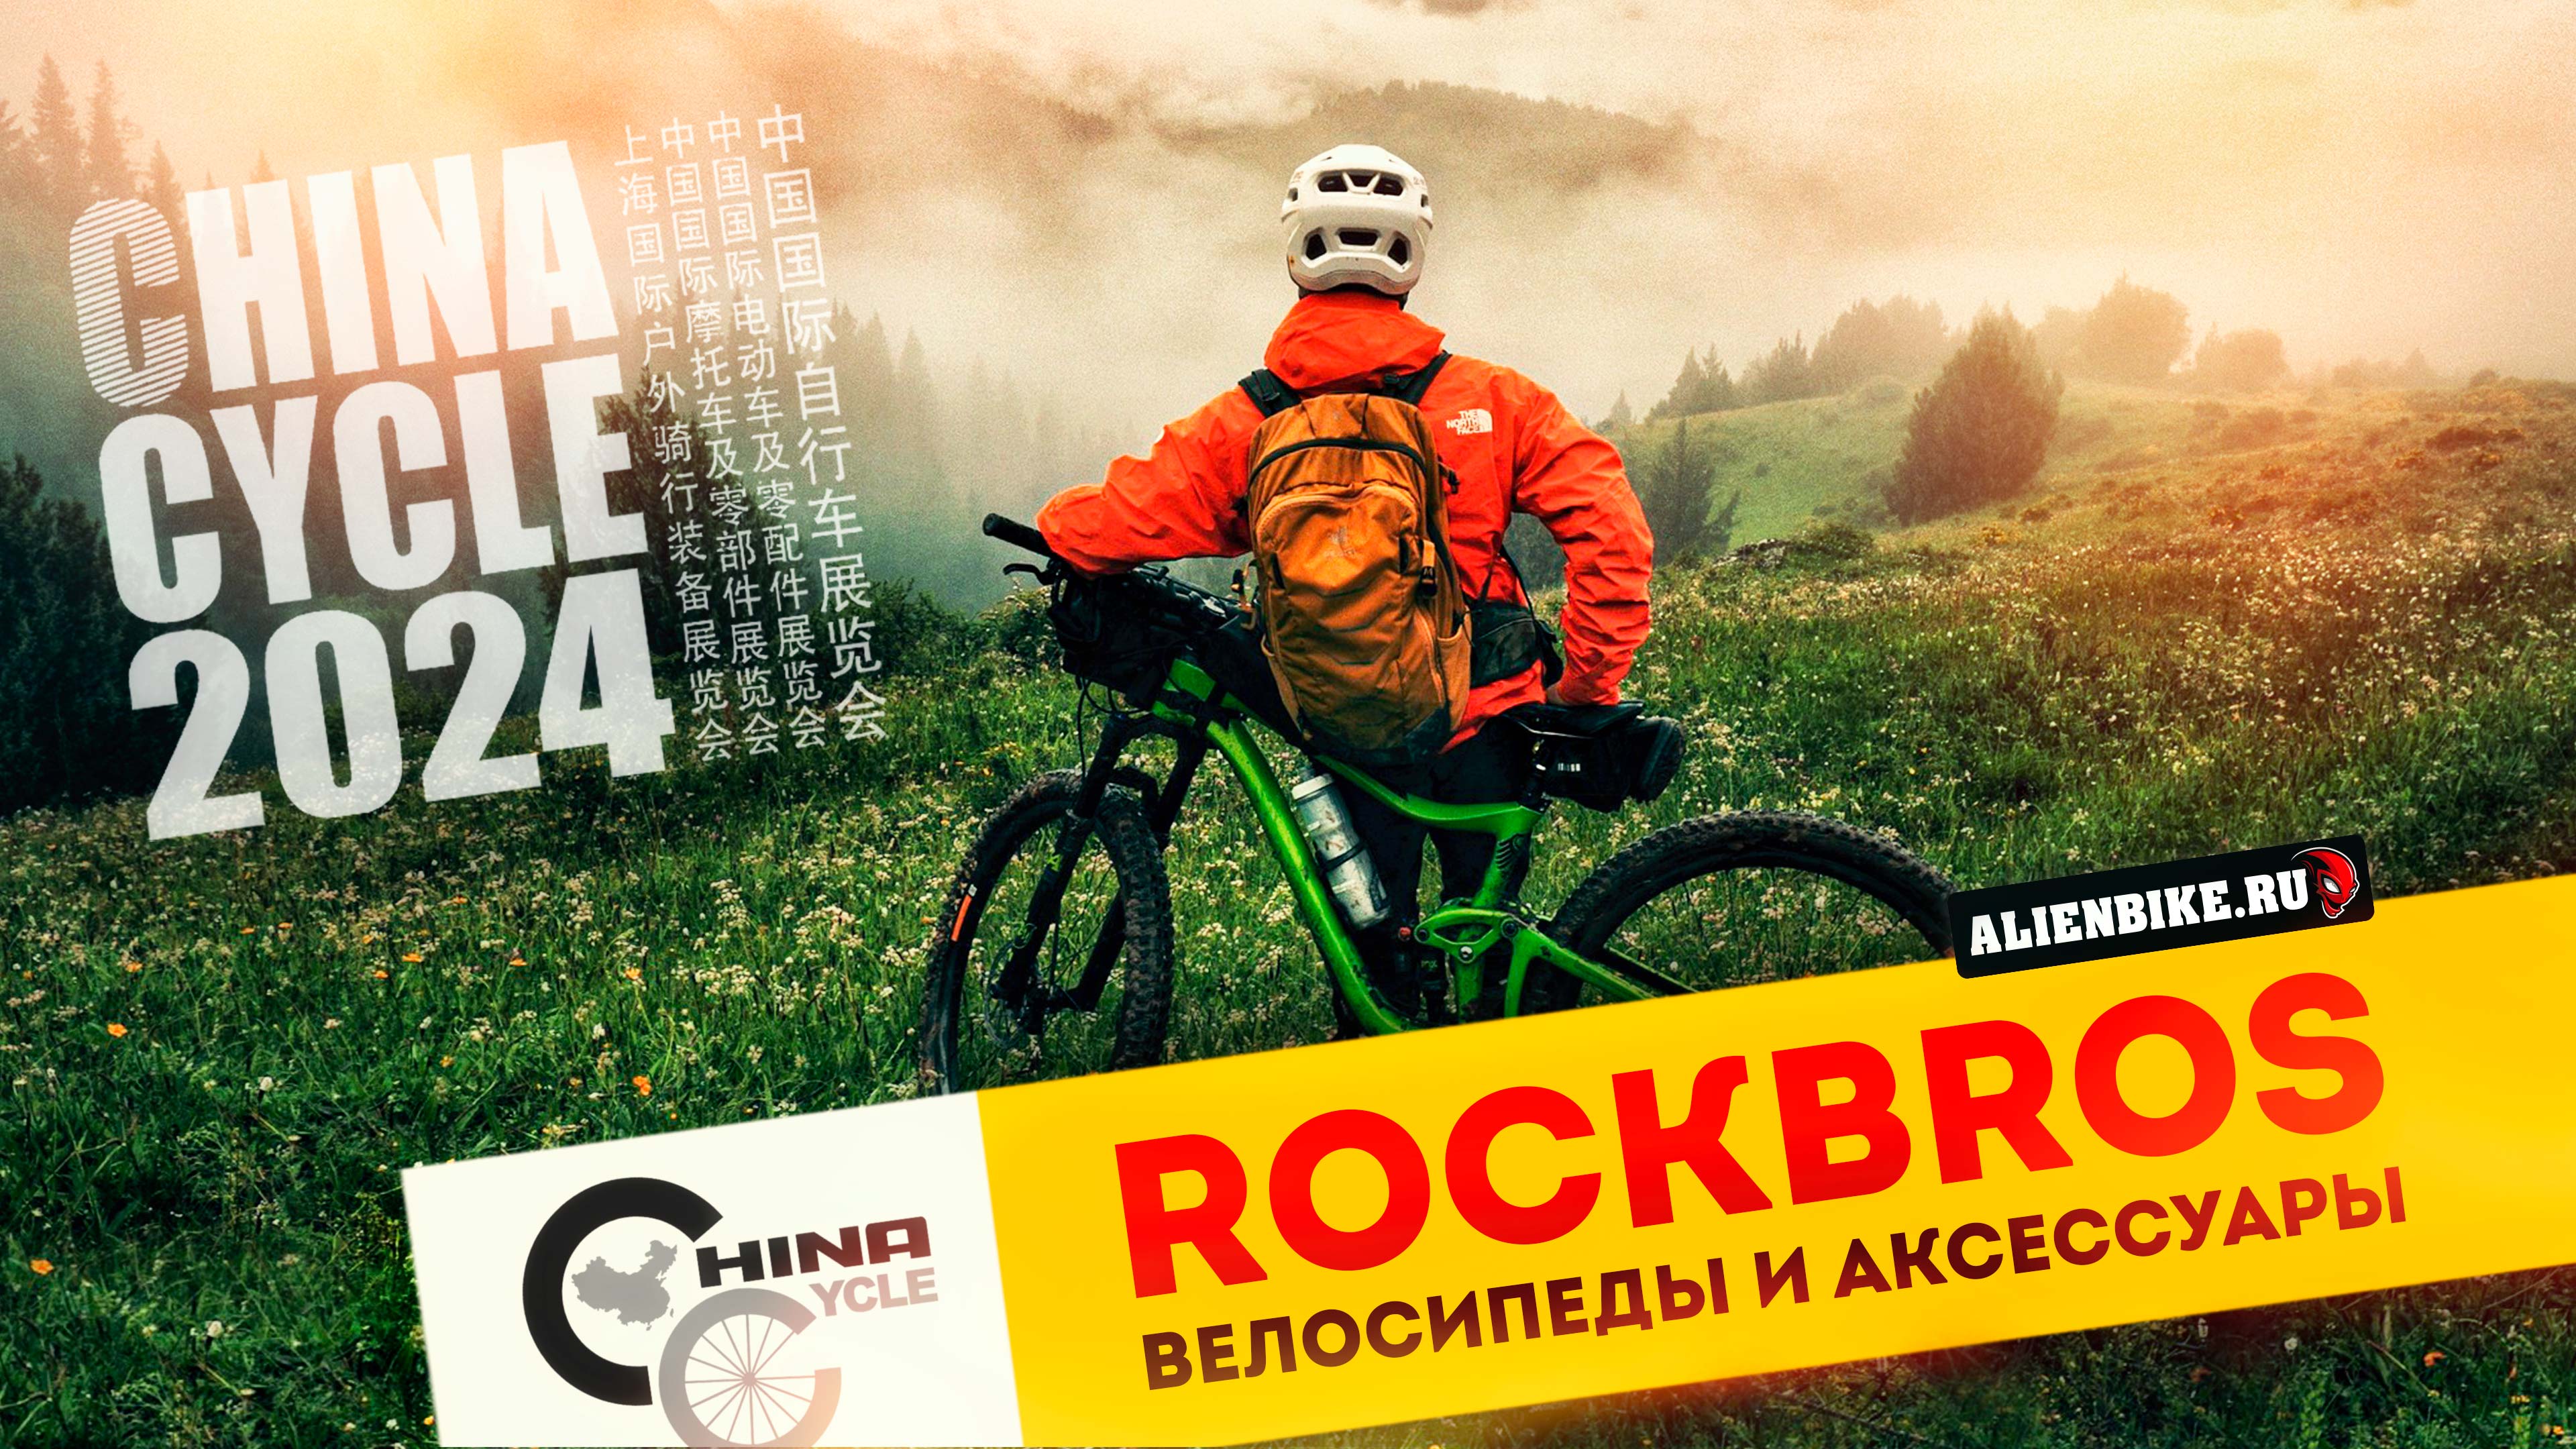 Велосипеды и аксессуары RockBros // Всё от сумок и фонариков до велосипедов | China Cycle 2024